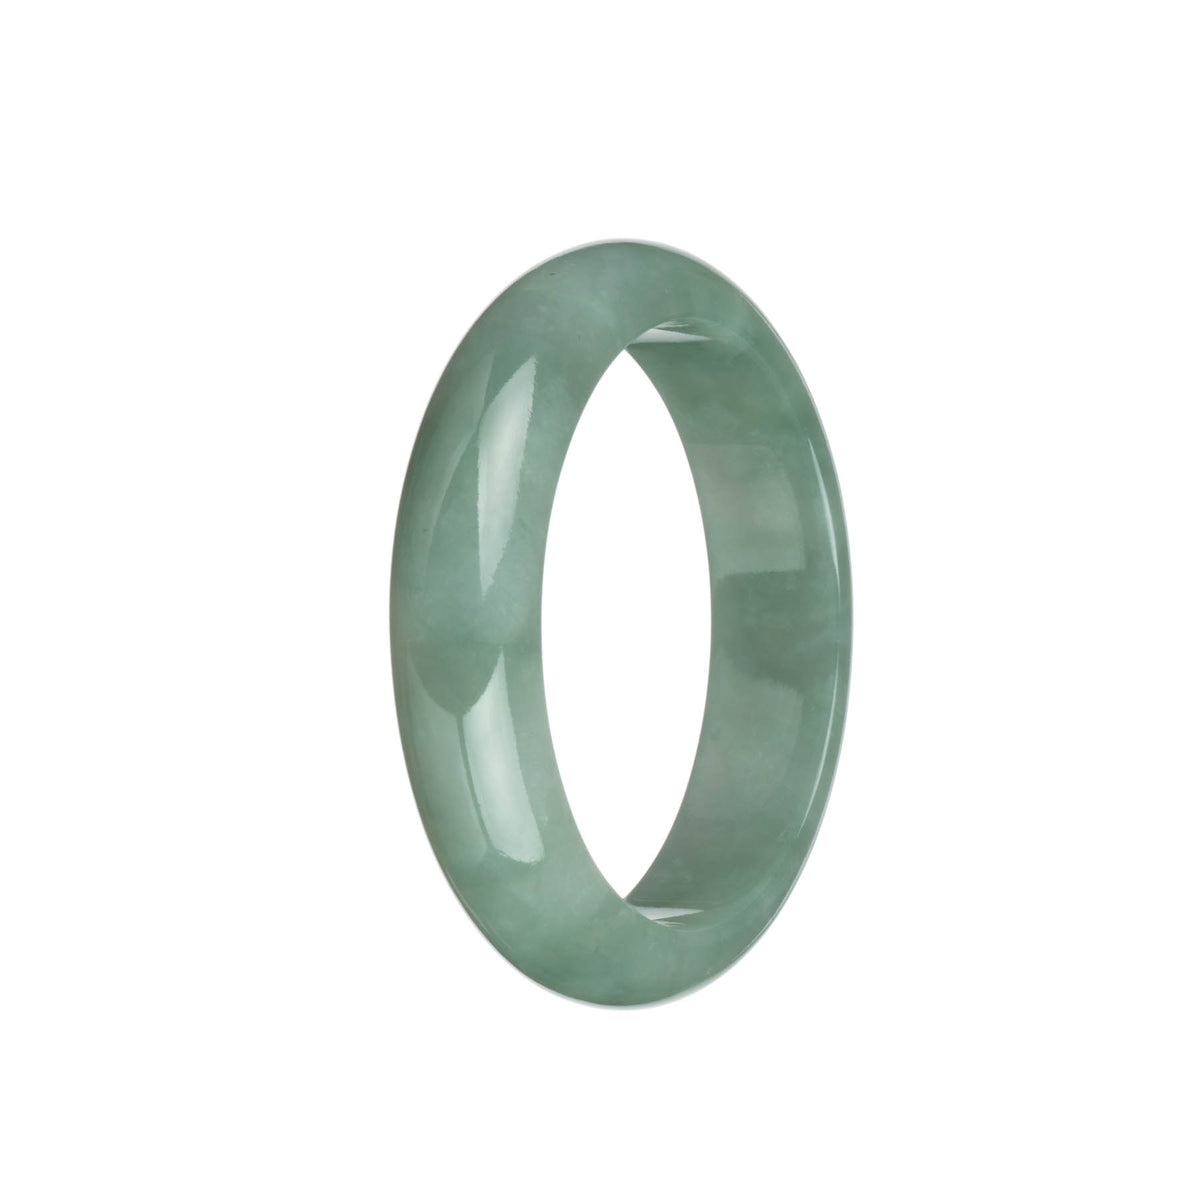 Real Grade A Green Burma Jade Bracelet - 58mm Half Moon